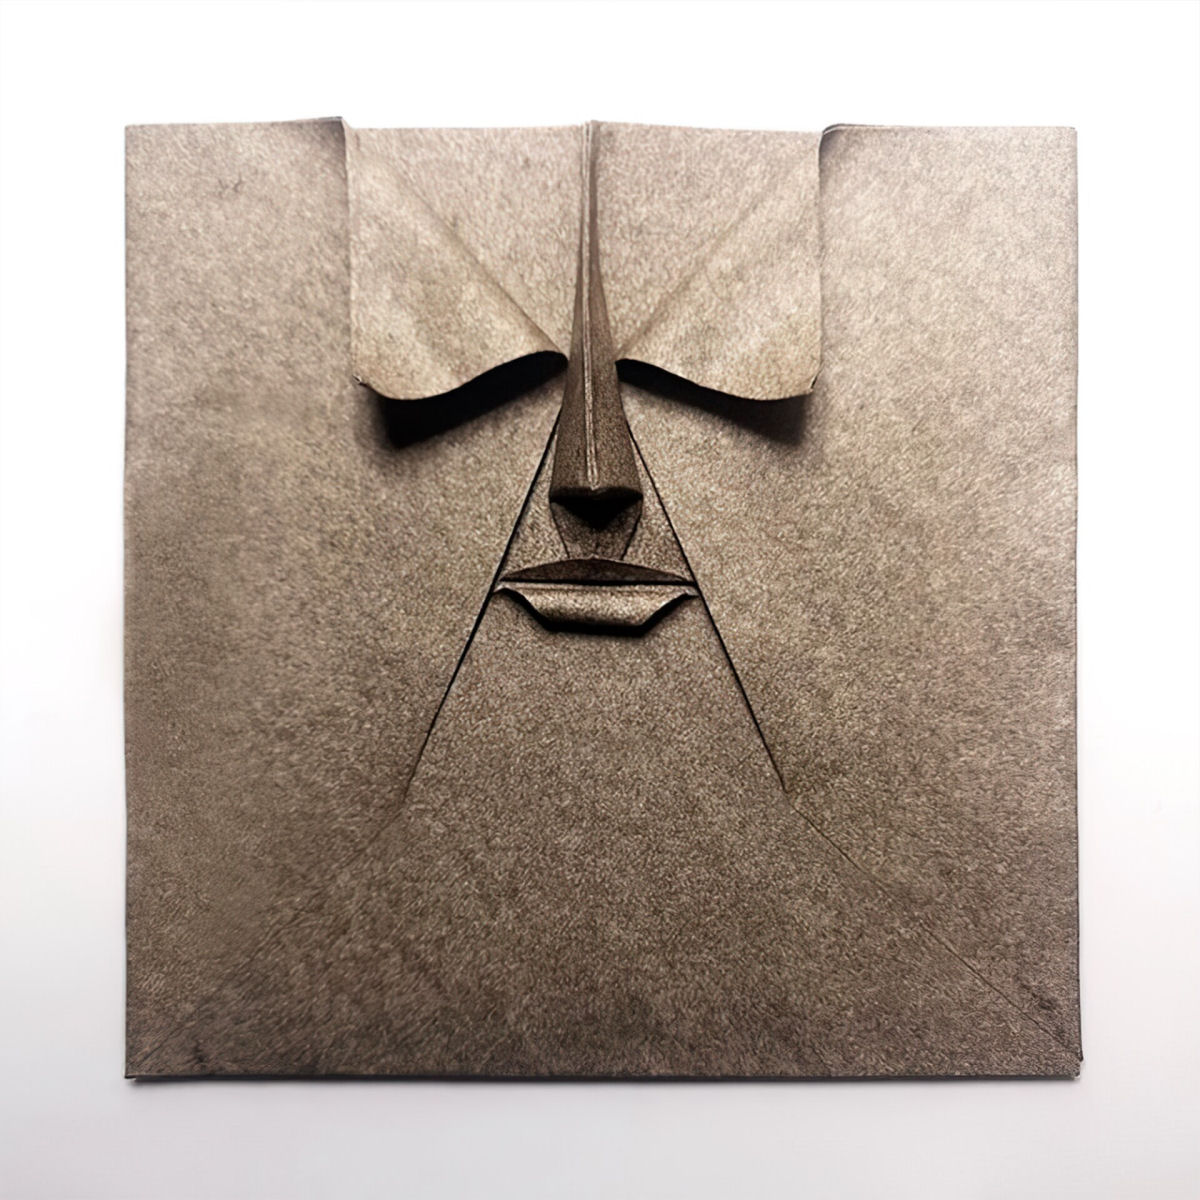 Dobras intrincadas de papel revelam retratos renderizados com precisão 05